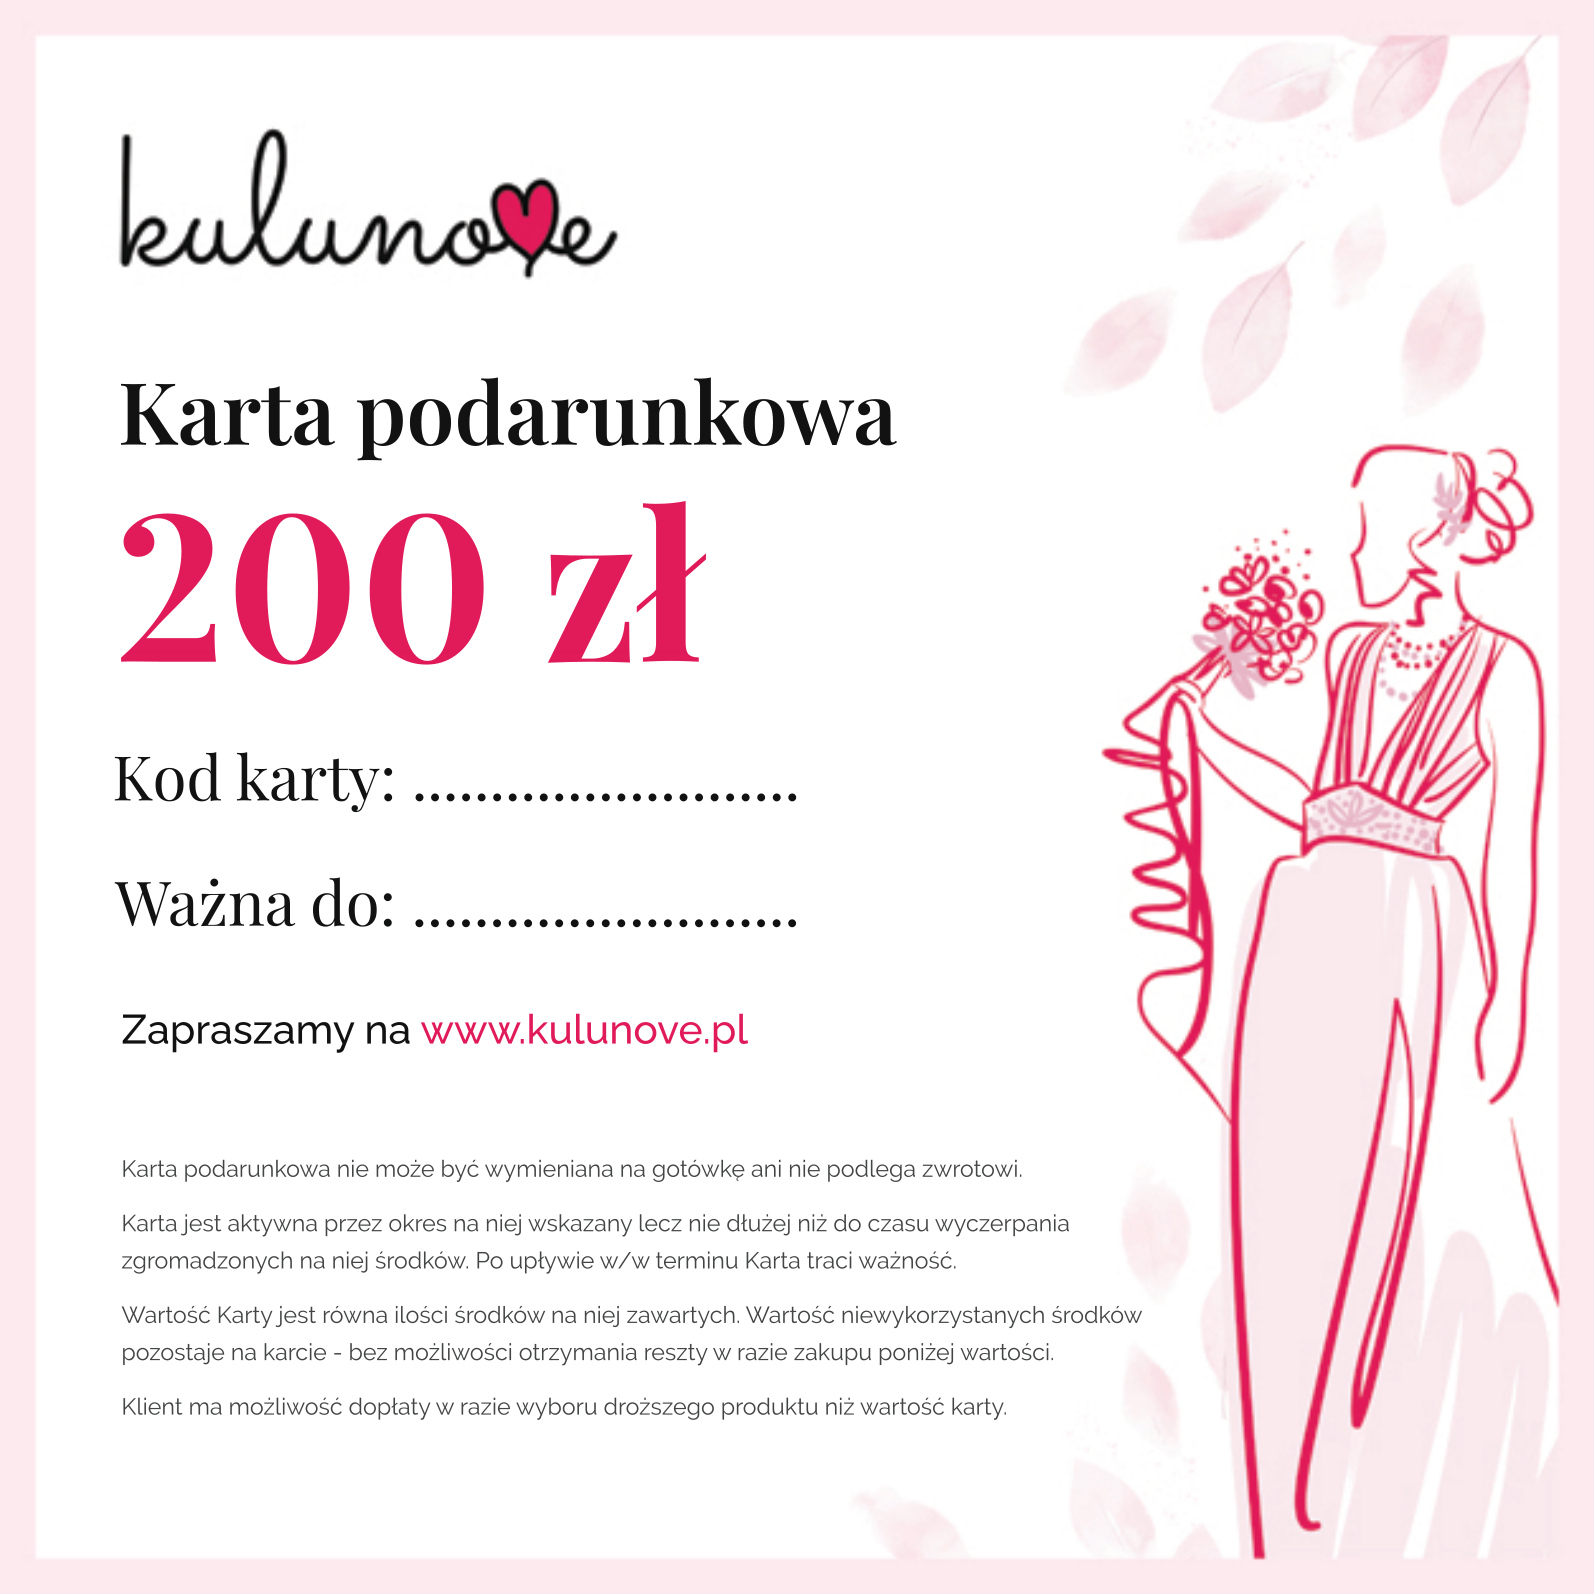 Karta podarunkowa Bon towarowy 200 zł Kulunove